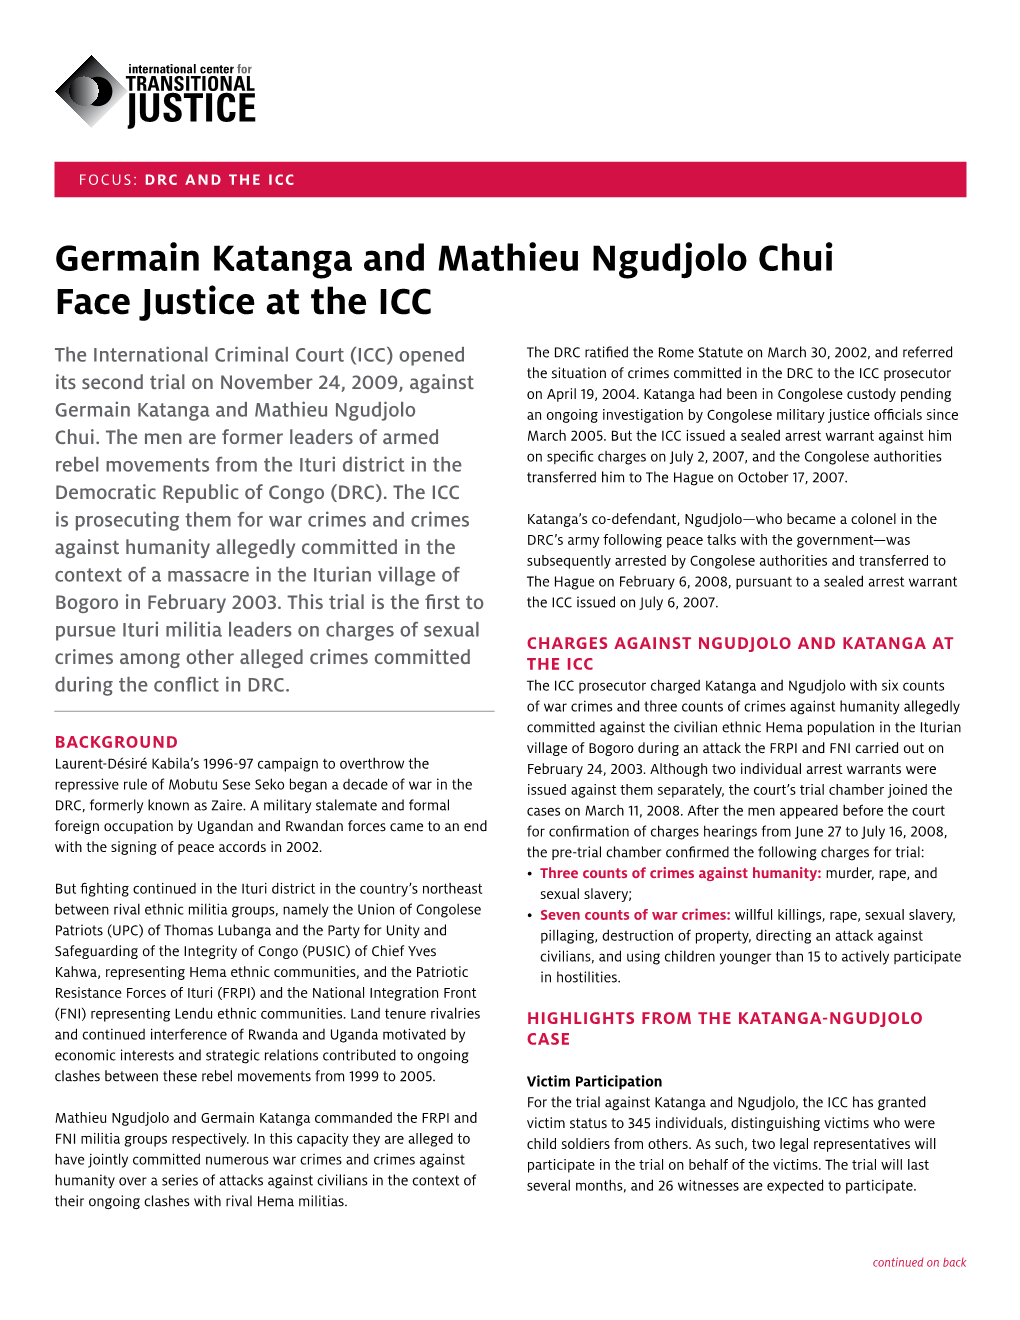 Germain Katanga and Mathieu Ngudjolo Chui Face Justice at The